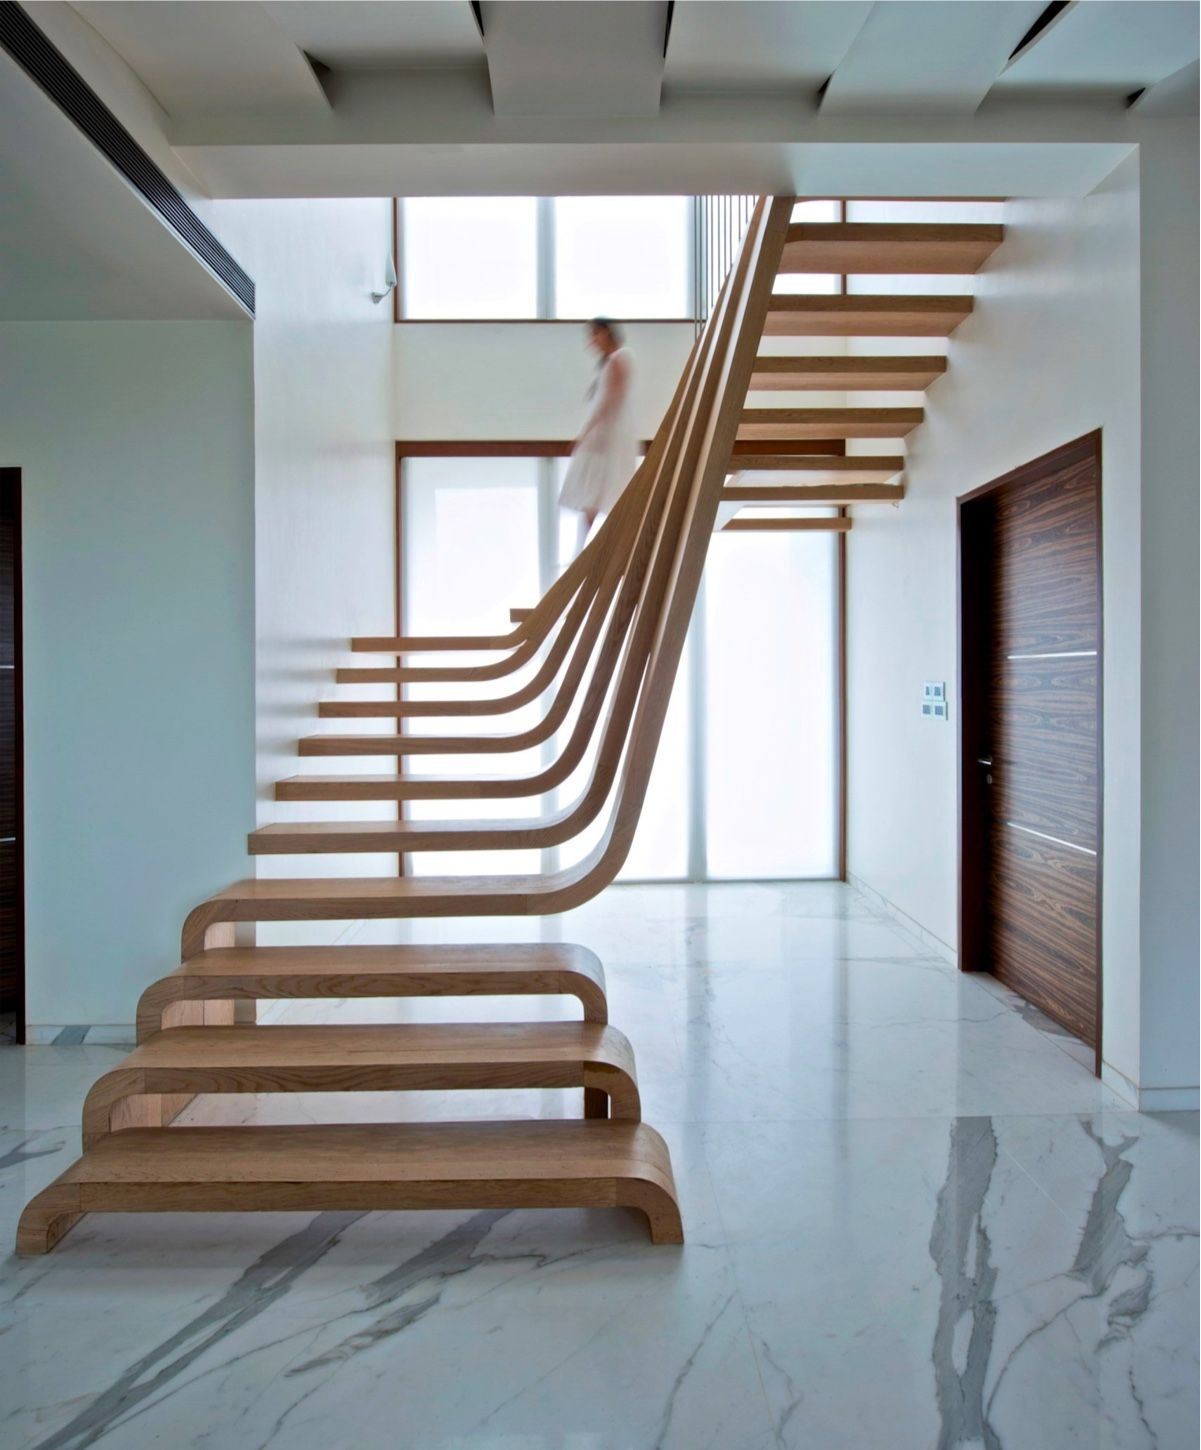 tangga dengan desain unik | dok. anextweb.com